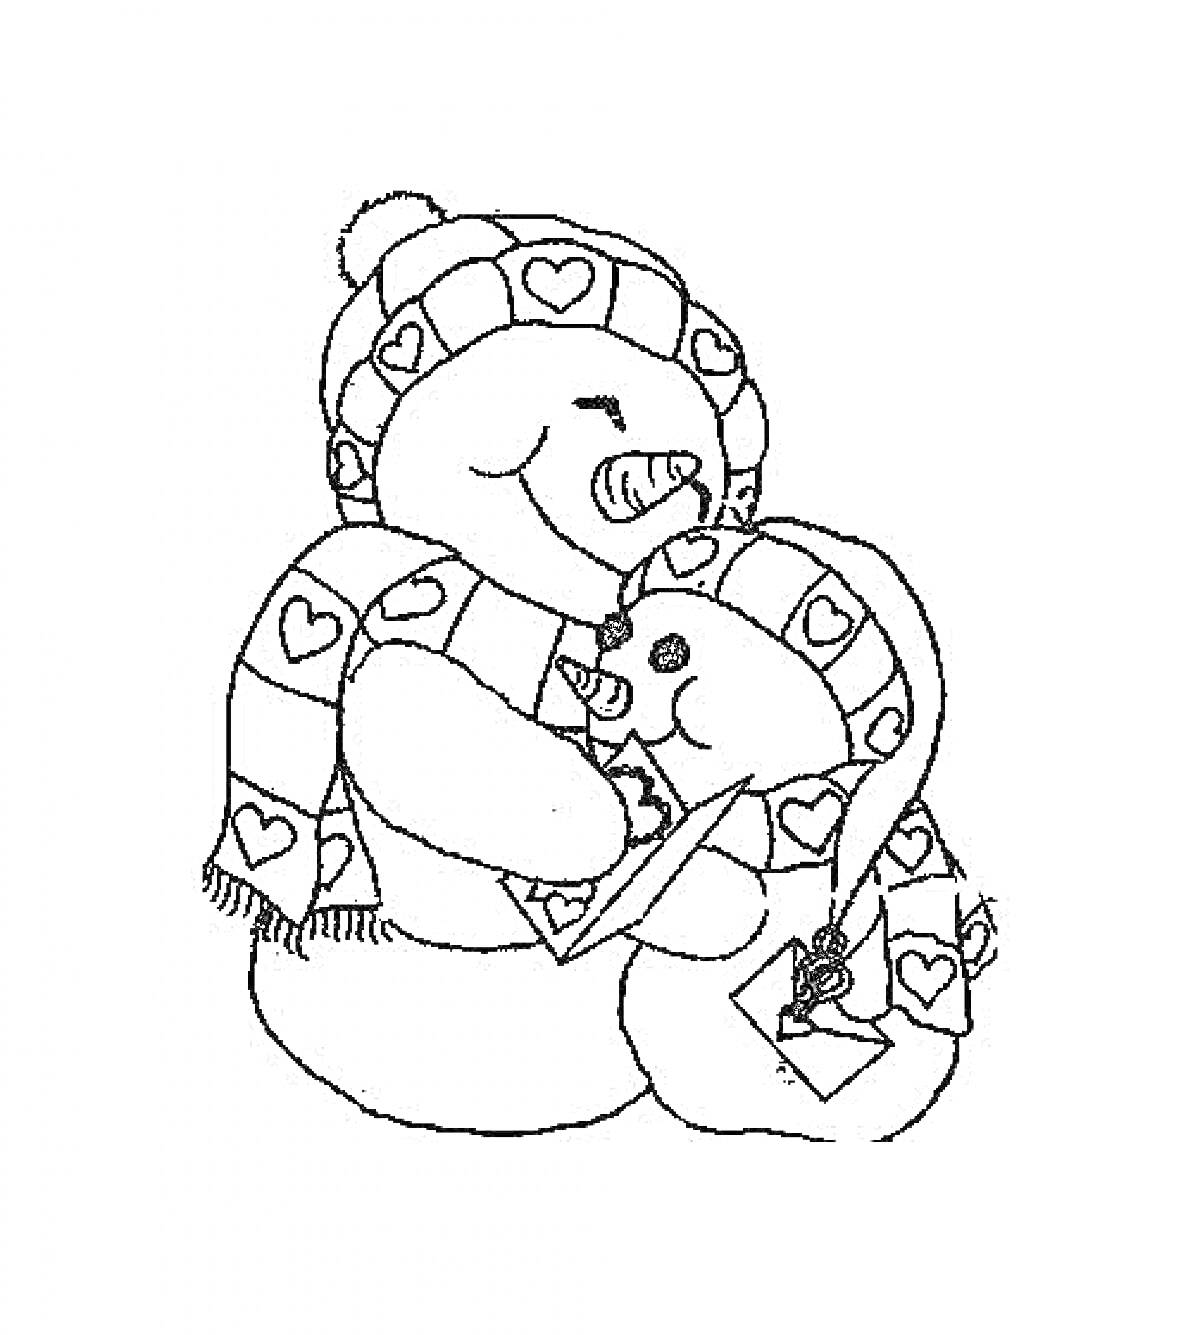 Раскраска Два снеговика в шапках и шарфах с сердечками, большой снеговик читает книгу маленькому снеговику